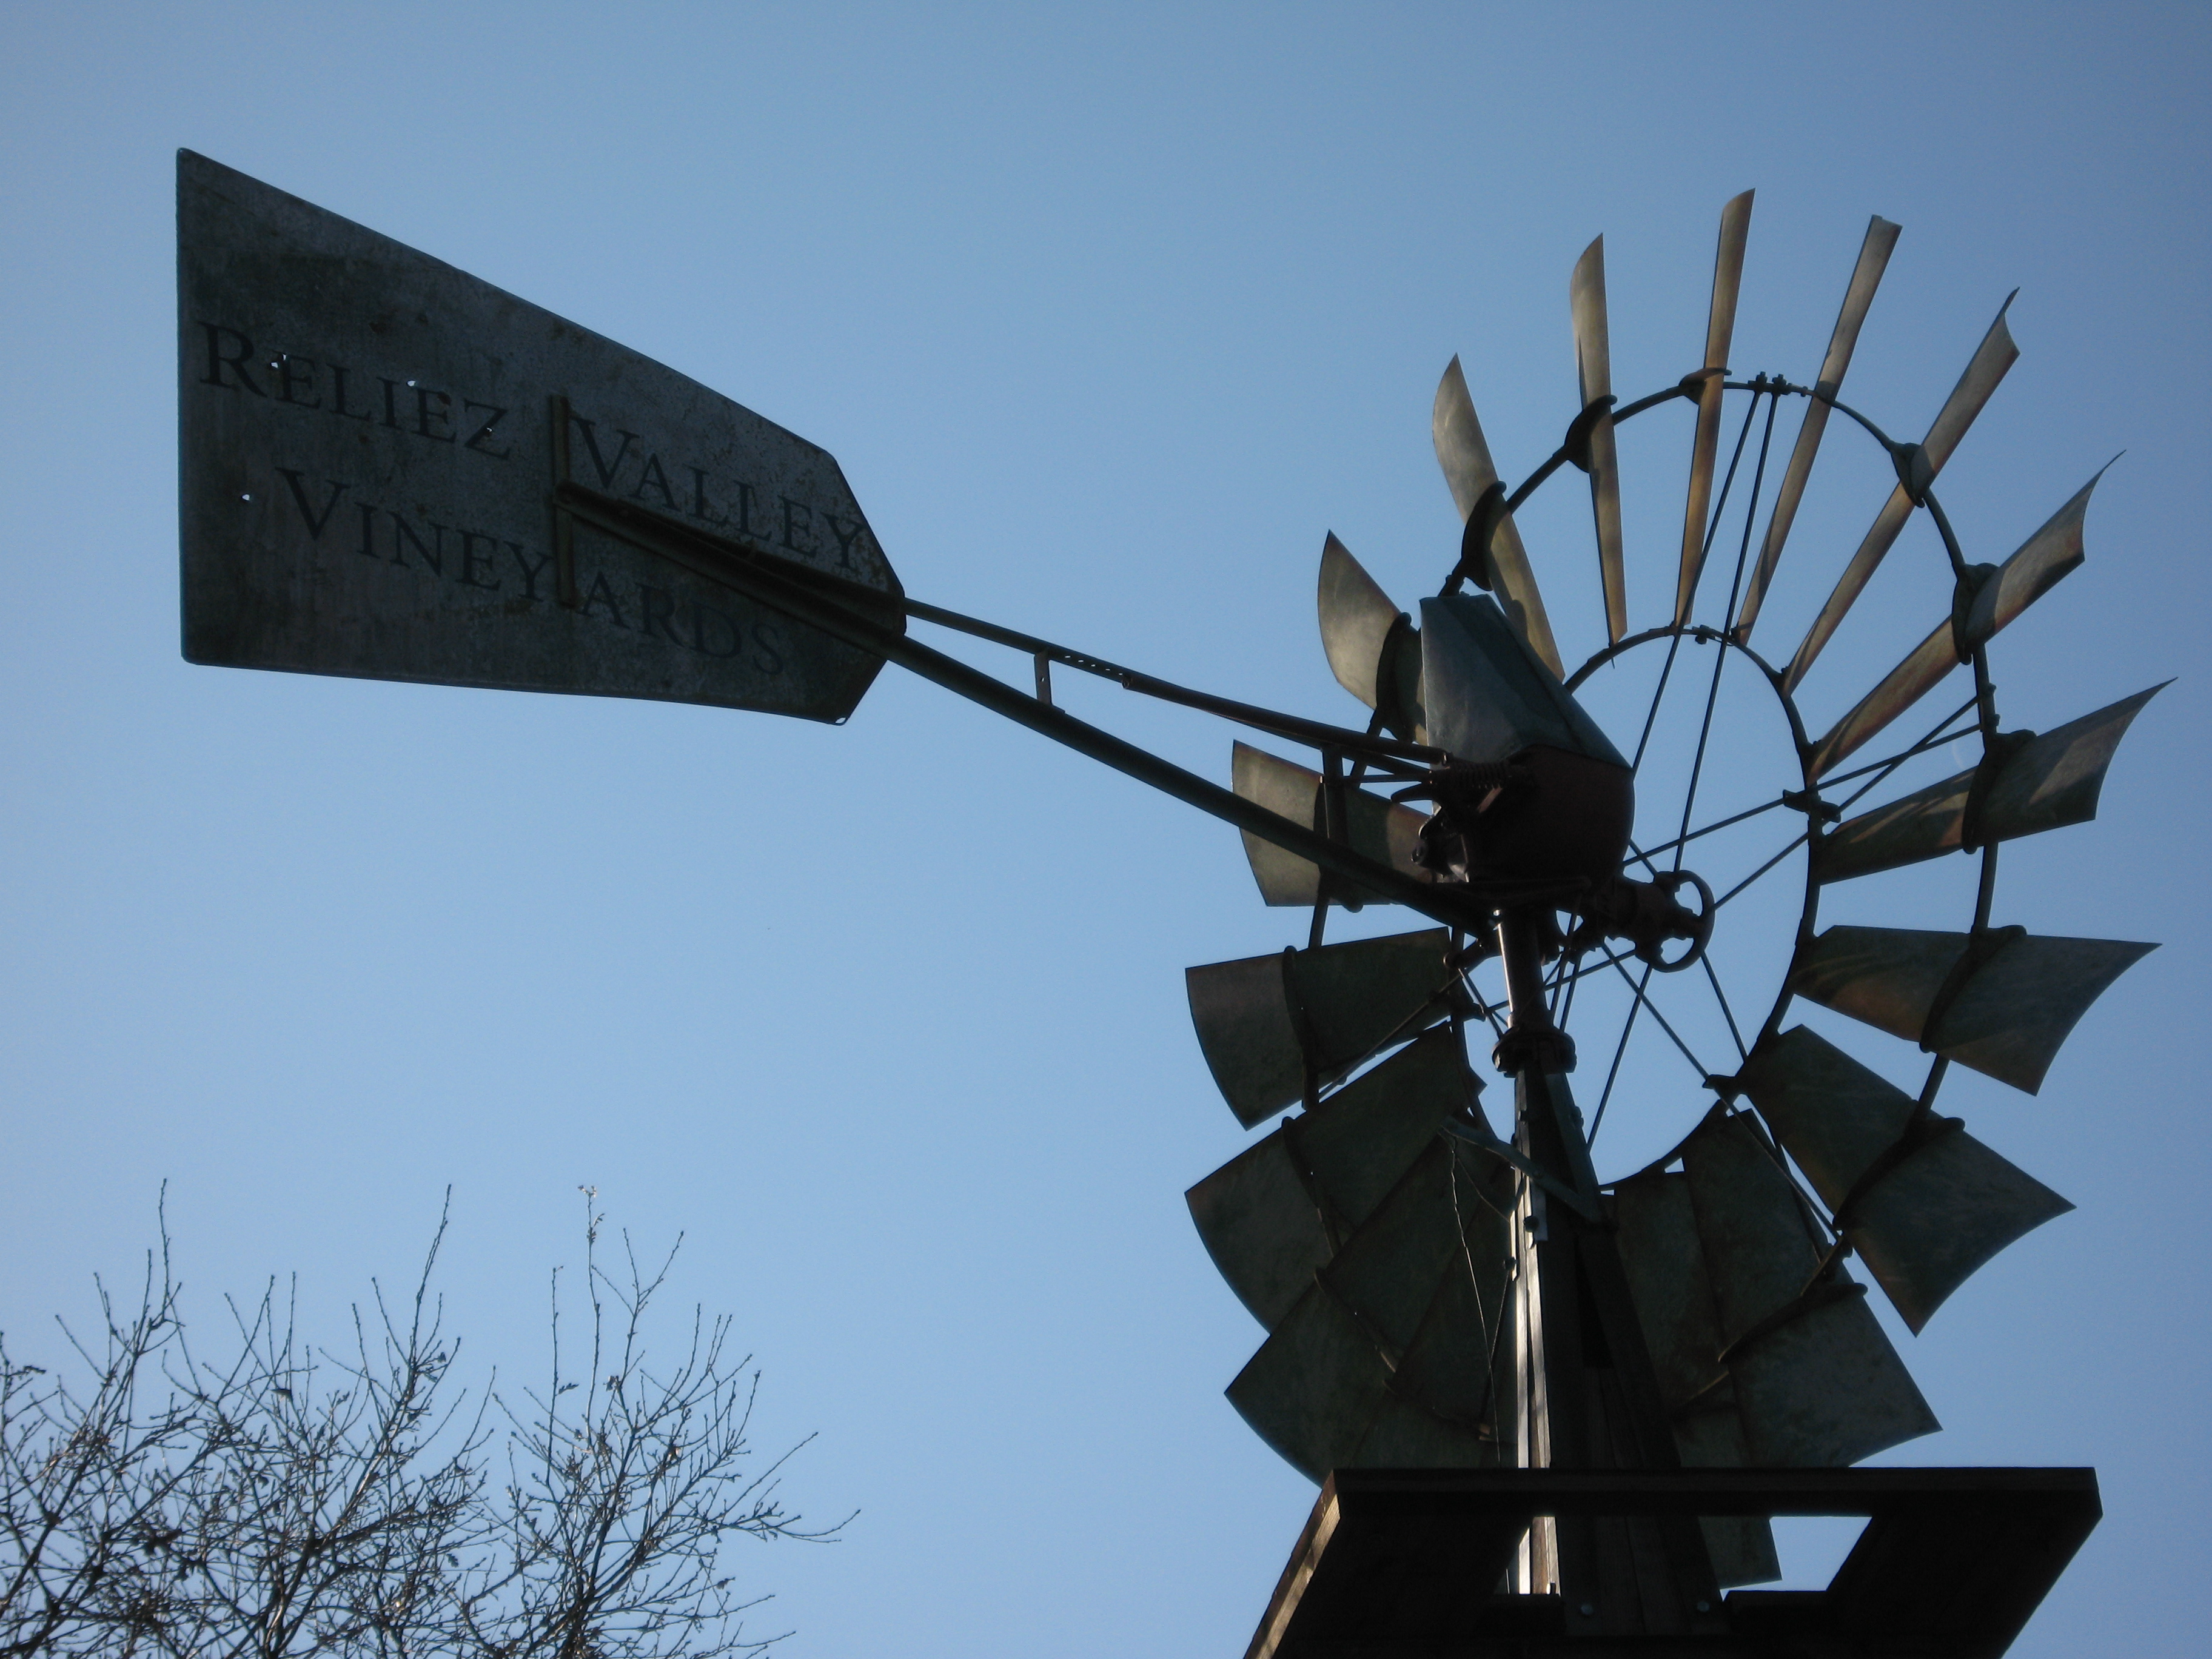 Windmill at Reliez Valley Vineyards